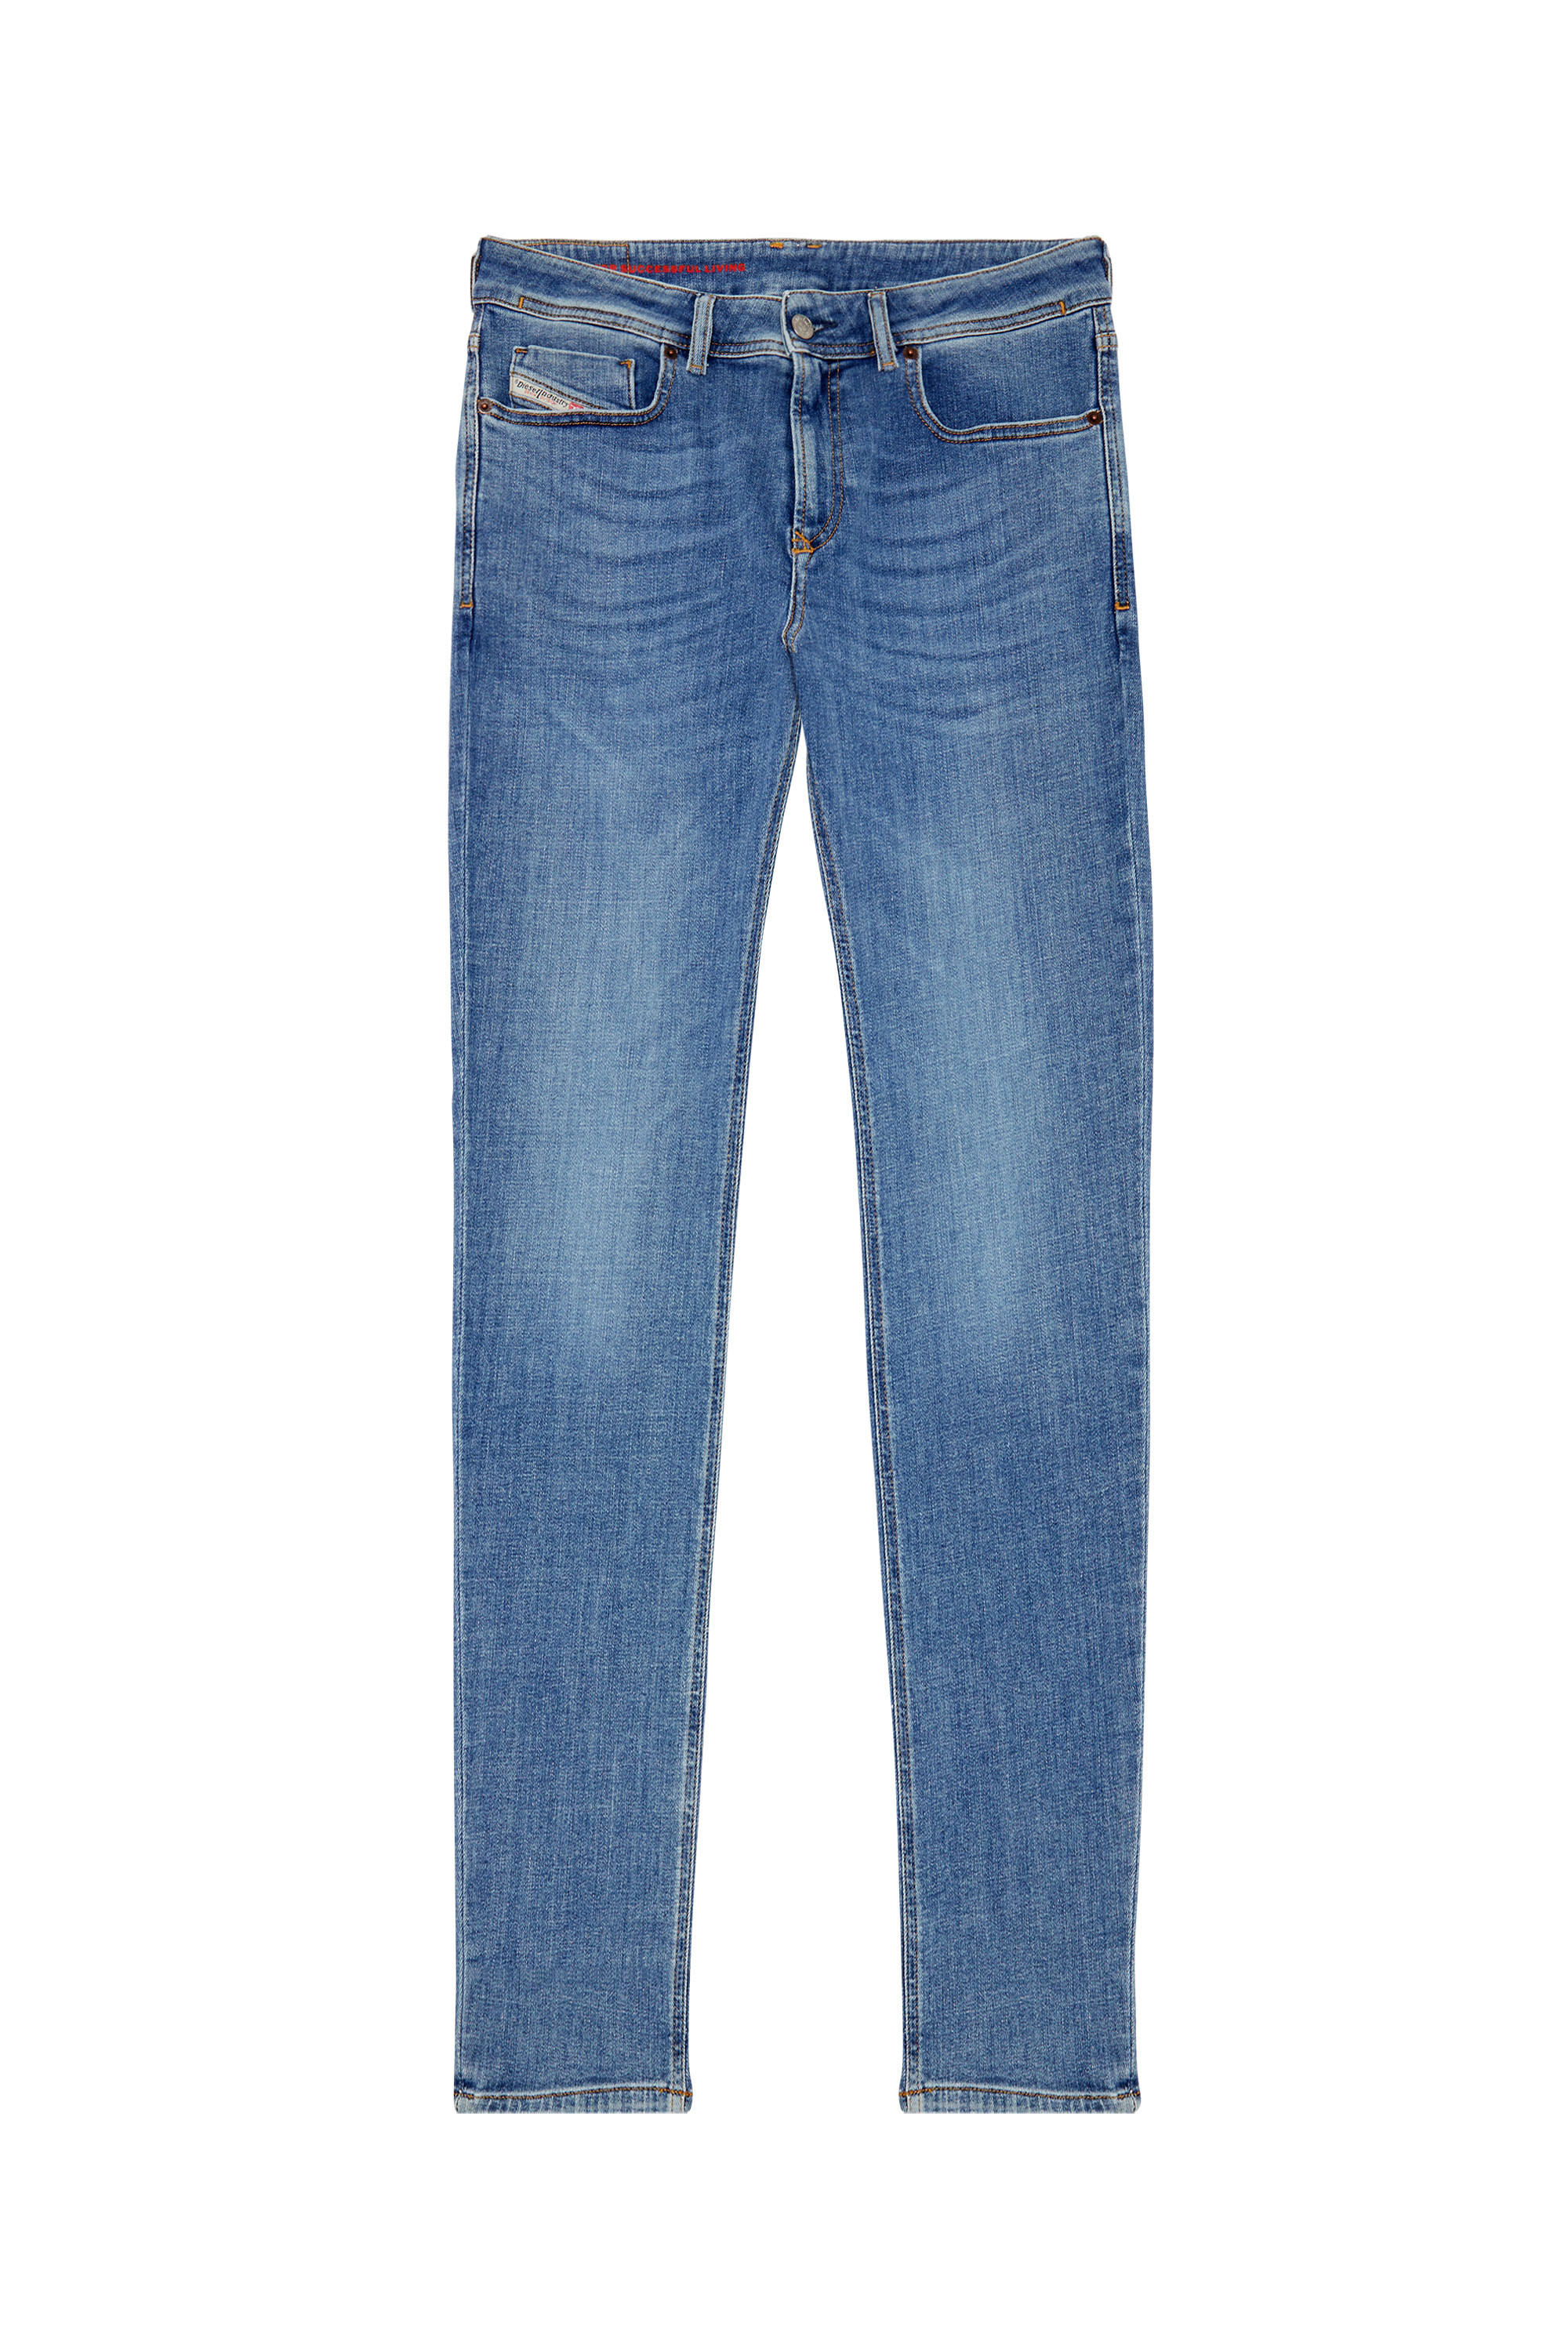 Diesel - Male Skinny Jeans 1979 Sleenker 09C01, Medium Blue - Image 6